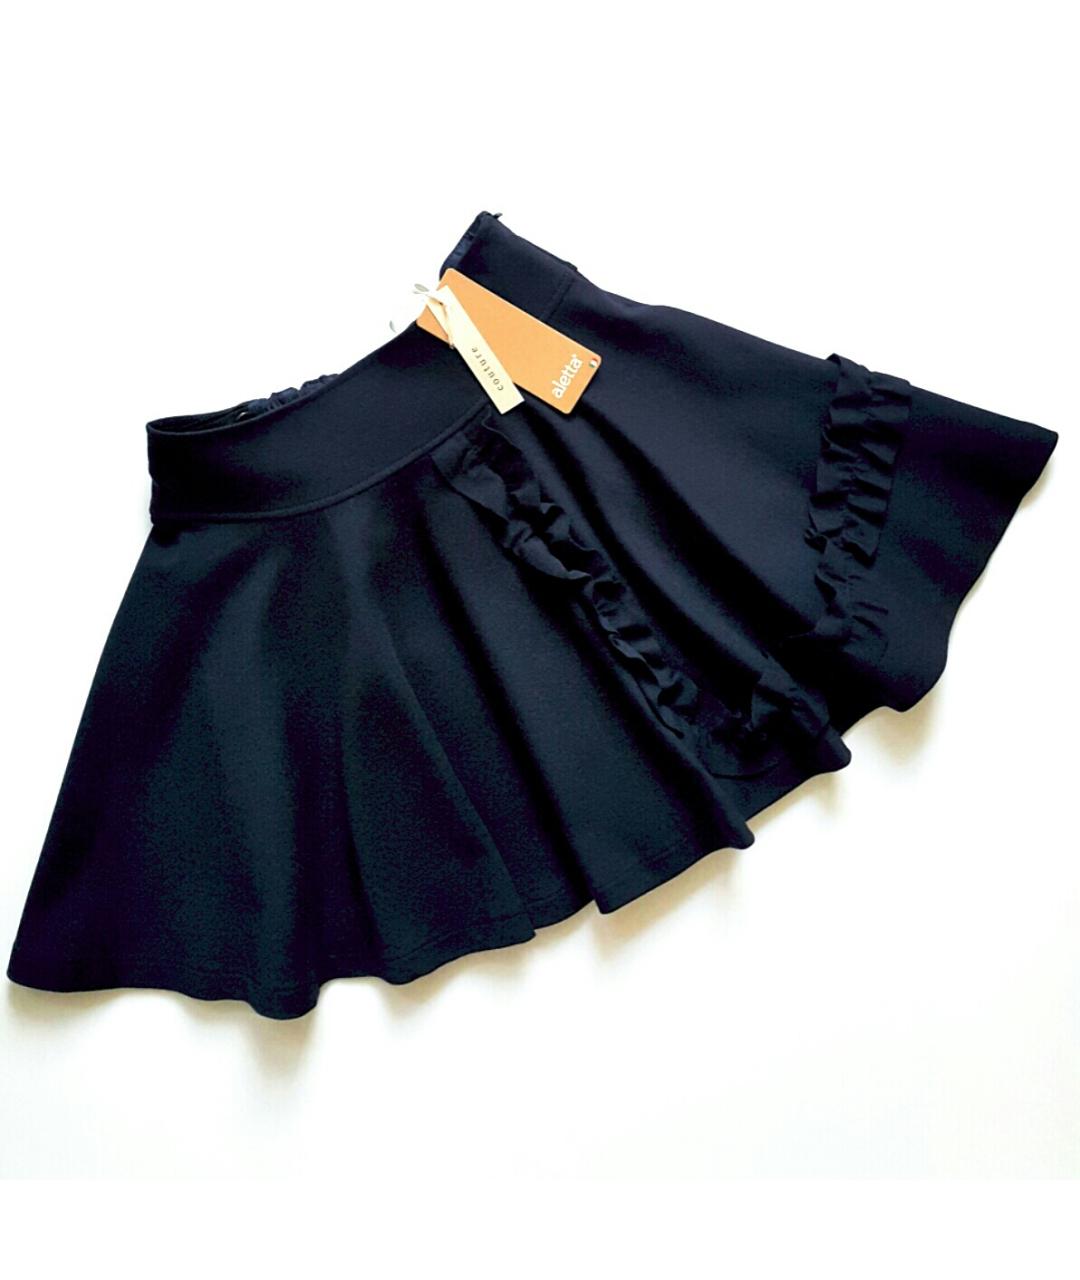 ALETTA Темно-синяя юбка, фото 3